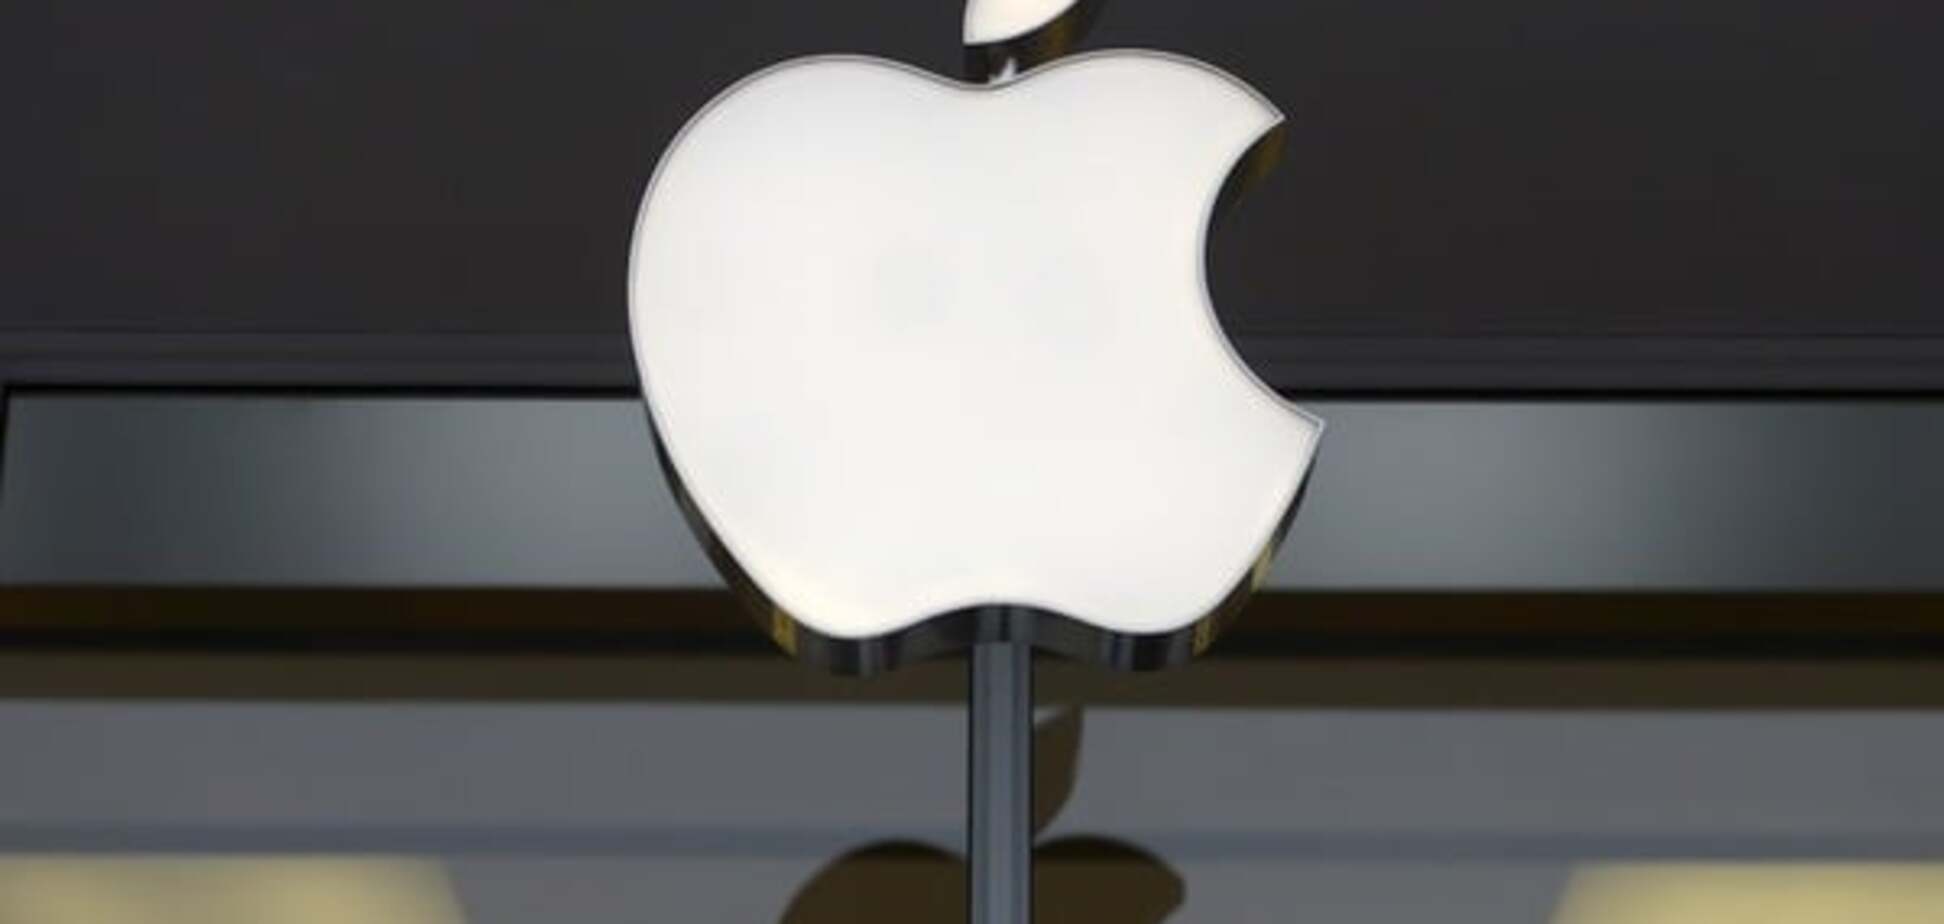 Apple запатентовала гибкий iPhone с сенсорным экраном